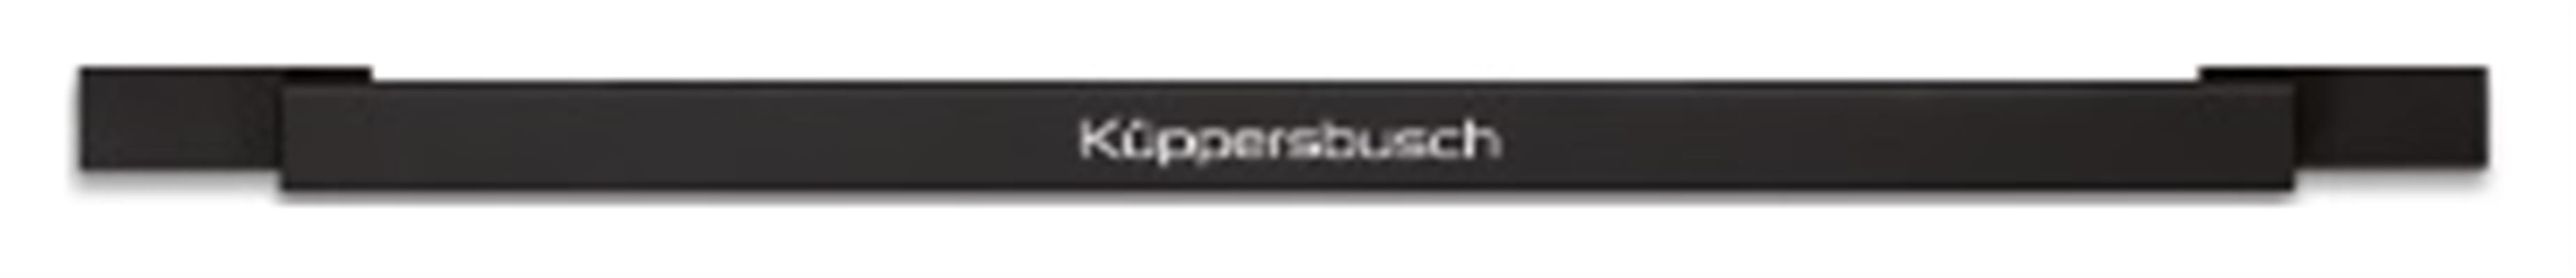 7505-Kuppersbusch-Oven-accessoires